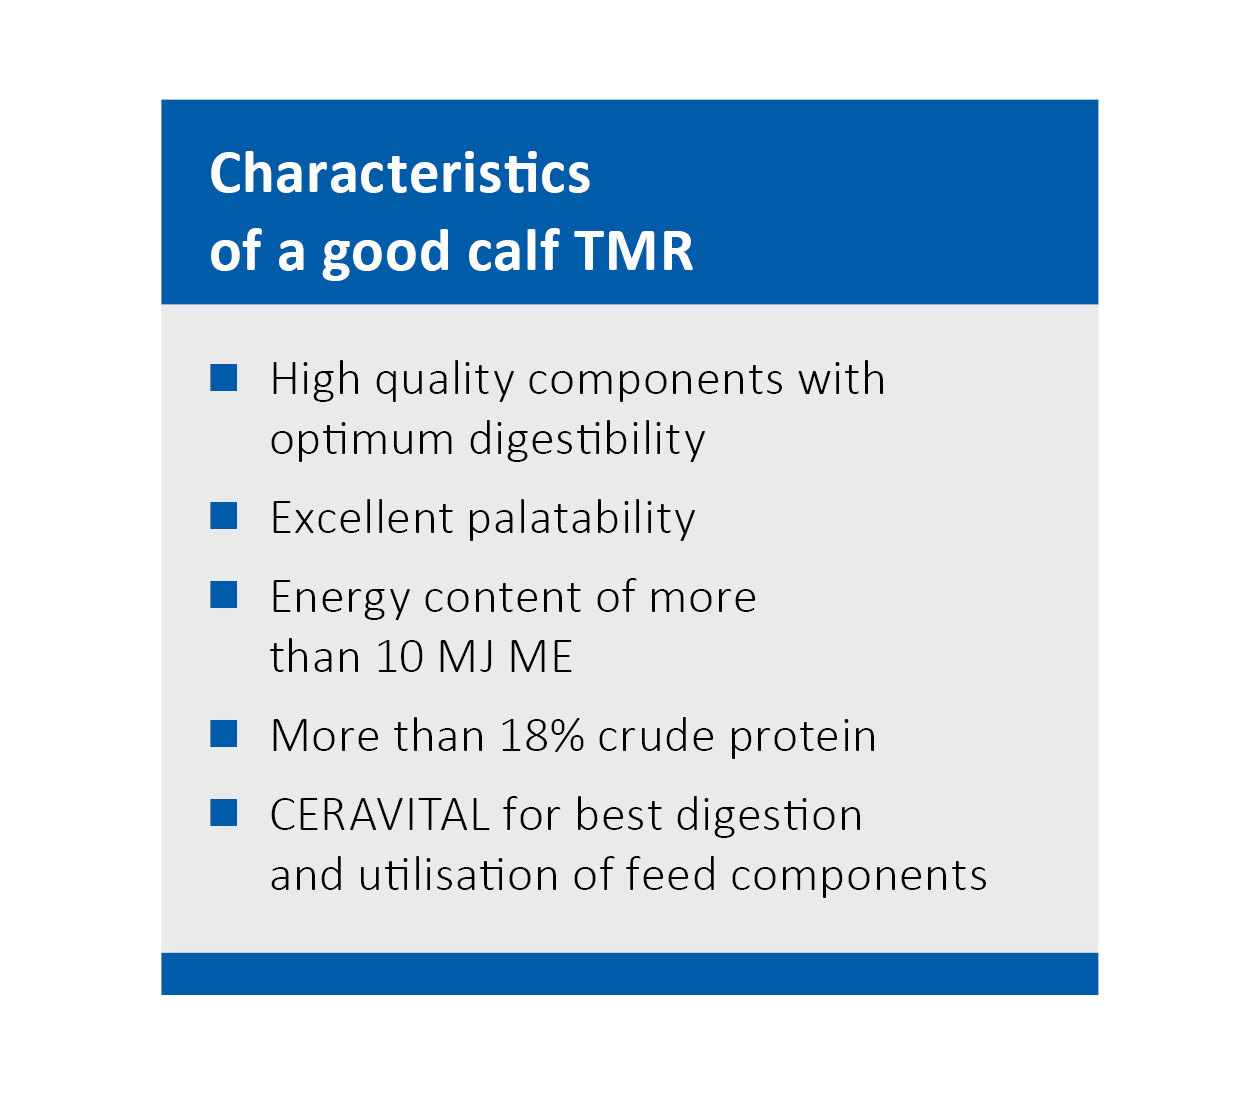 Characteristics of a good calf TMR